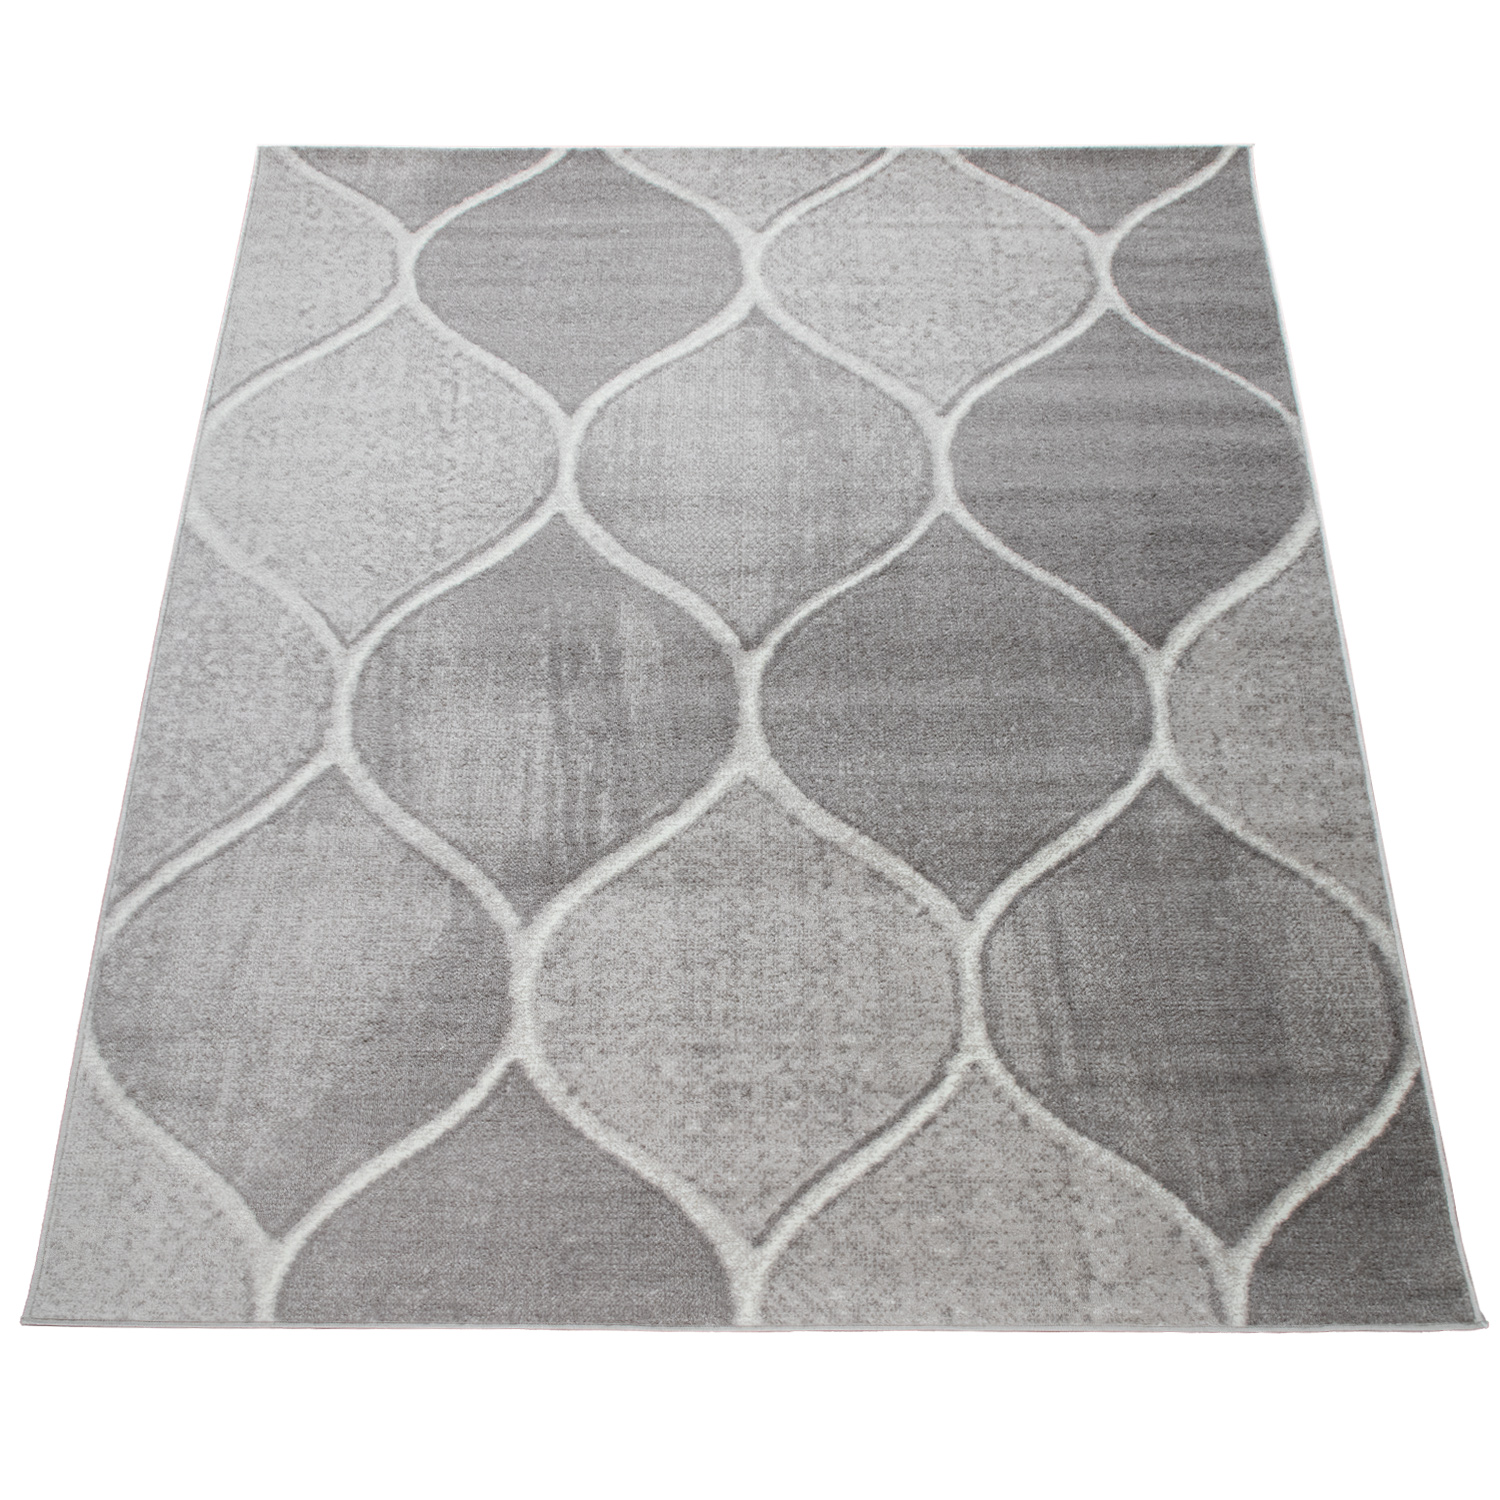 Wohnzimmer-Teppich Orient Design Einfarbig Grau 